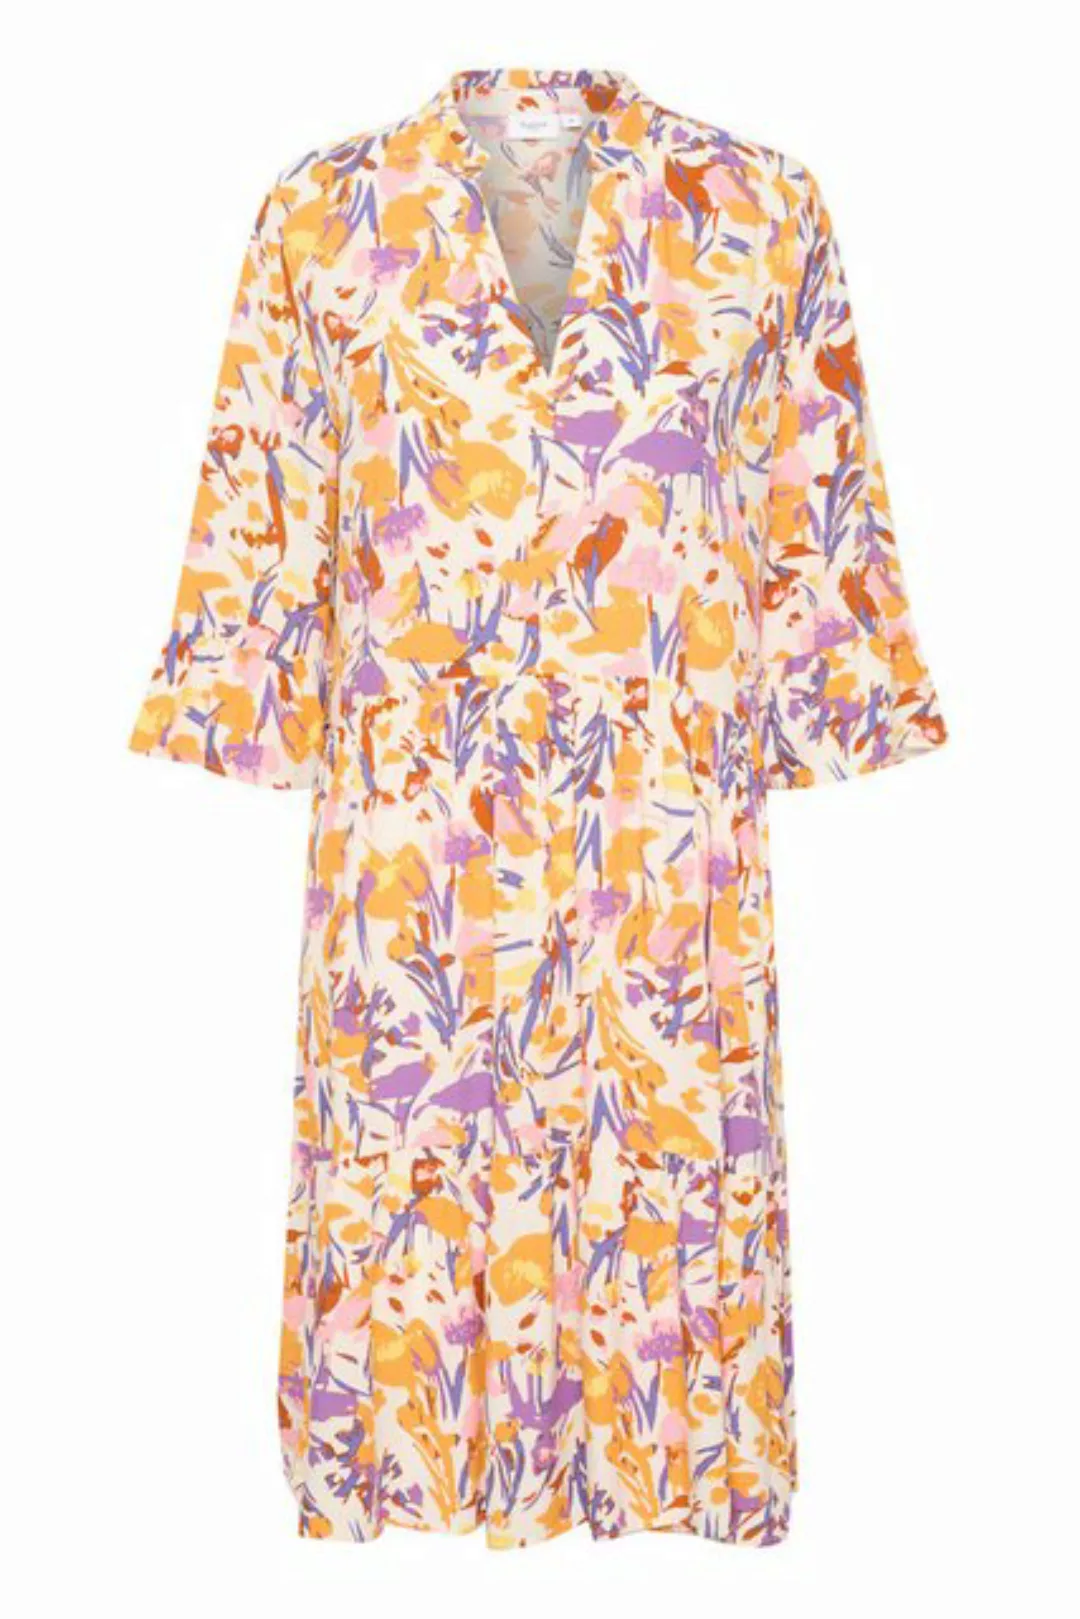 Saint Tropez Jerseykleid EdaSZ Dress günstig online kaufen